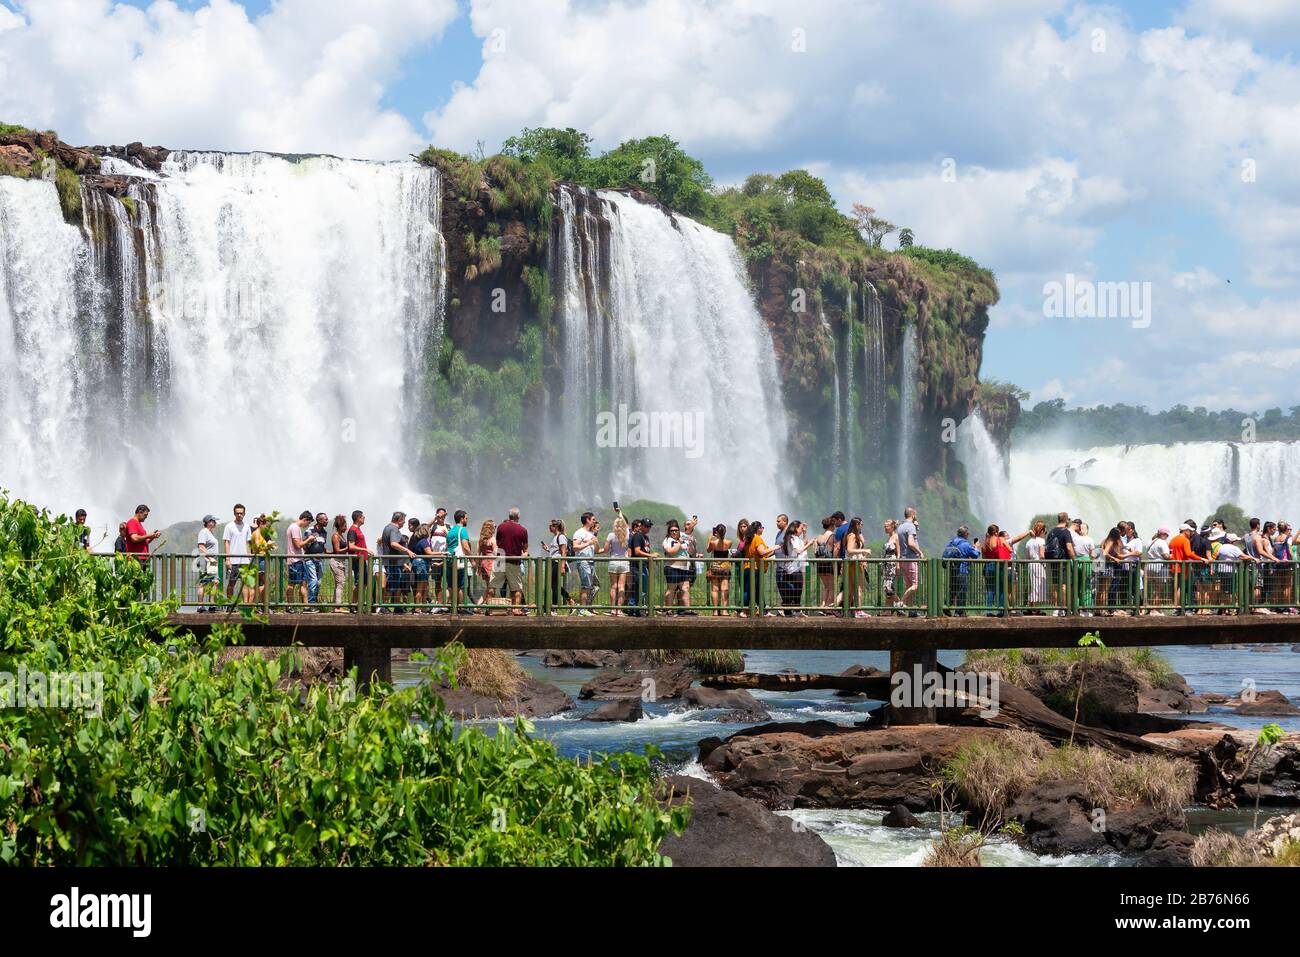 Touristenmassen auf einem Gehweg, der die Wasserfälle von Iguazu in Brasilien (Cataratas do Iguaçu) besucht. Schöne Naturlandschaft im Südamerika-Wald. Stockfoto